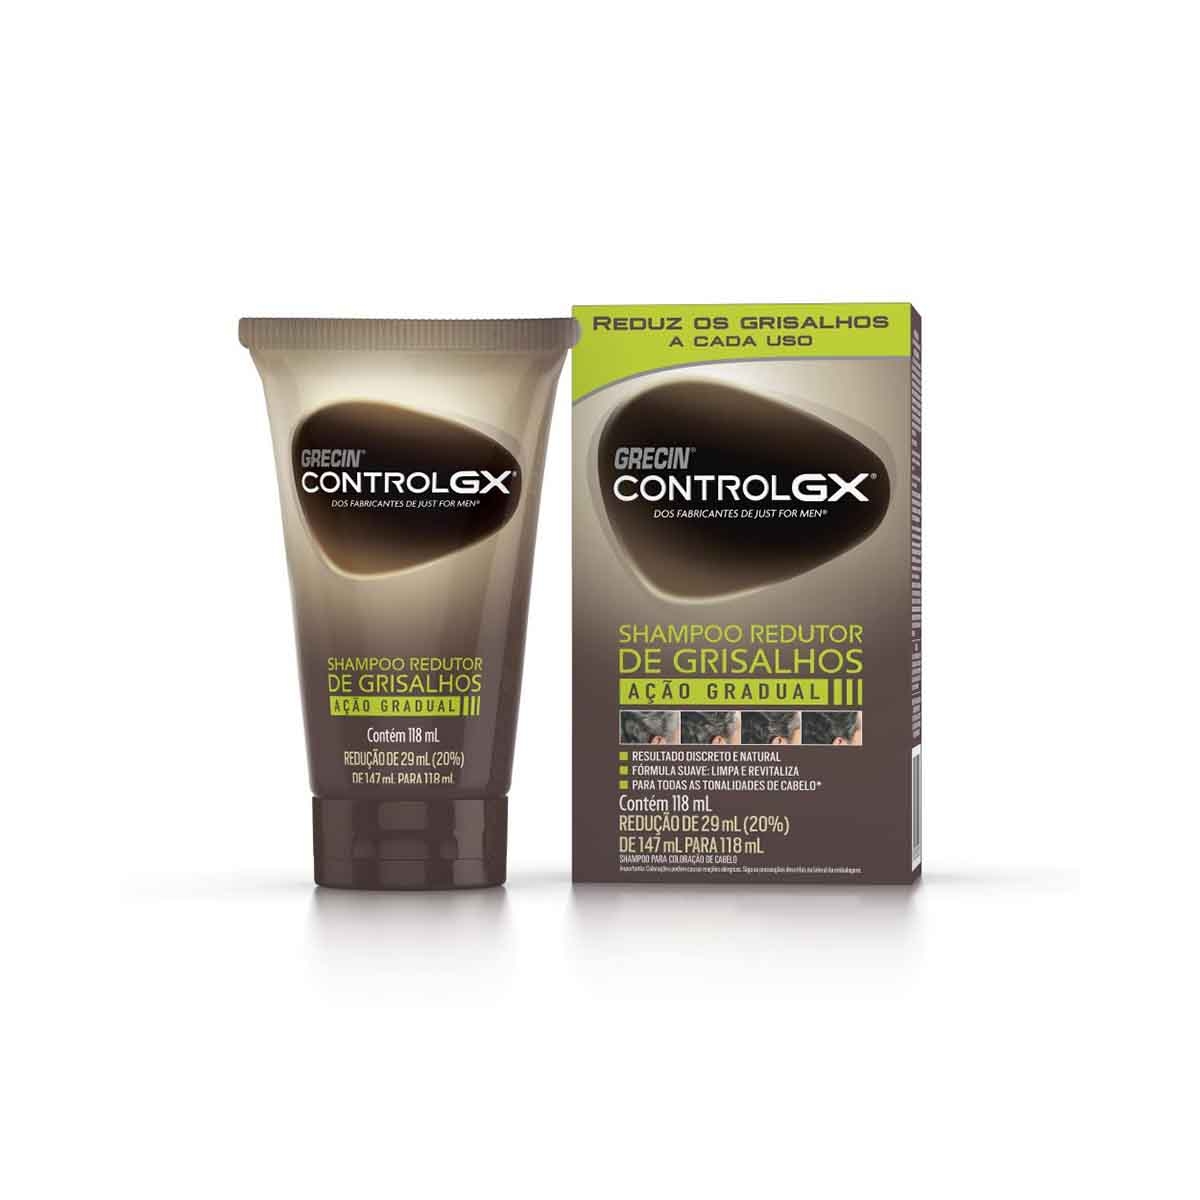 Shampoo Redutor de Grisalhos Grecin Control GX 118ml